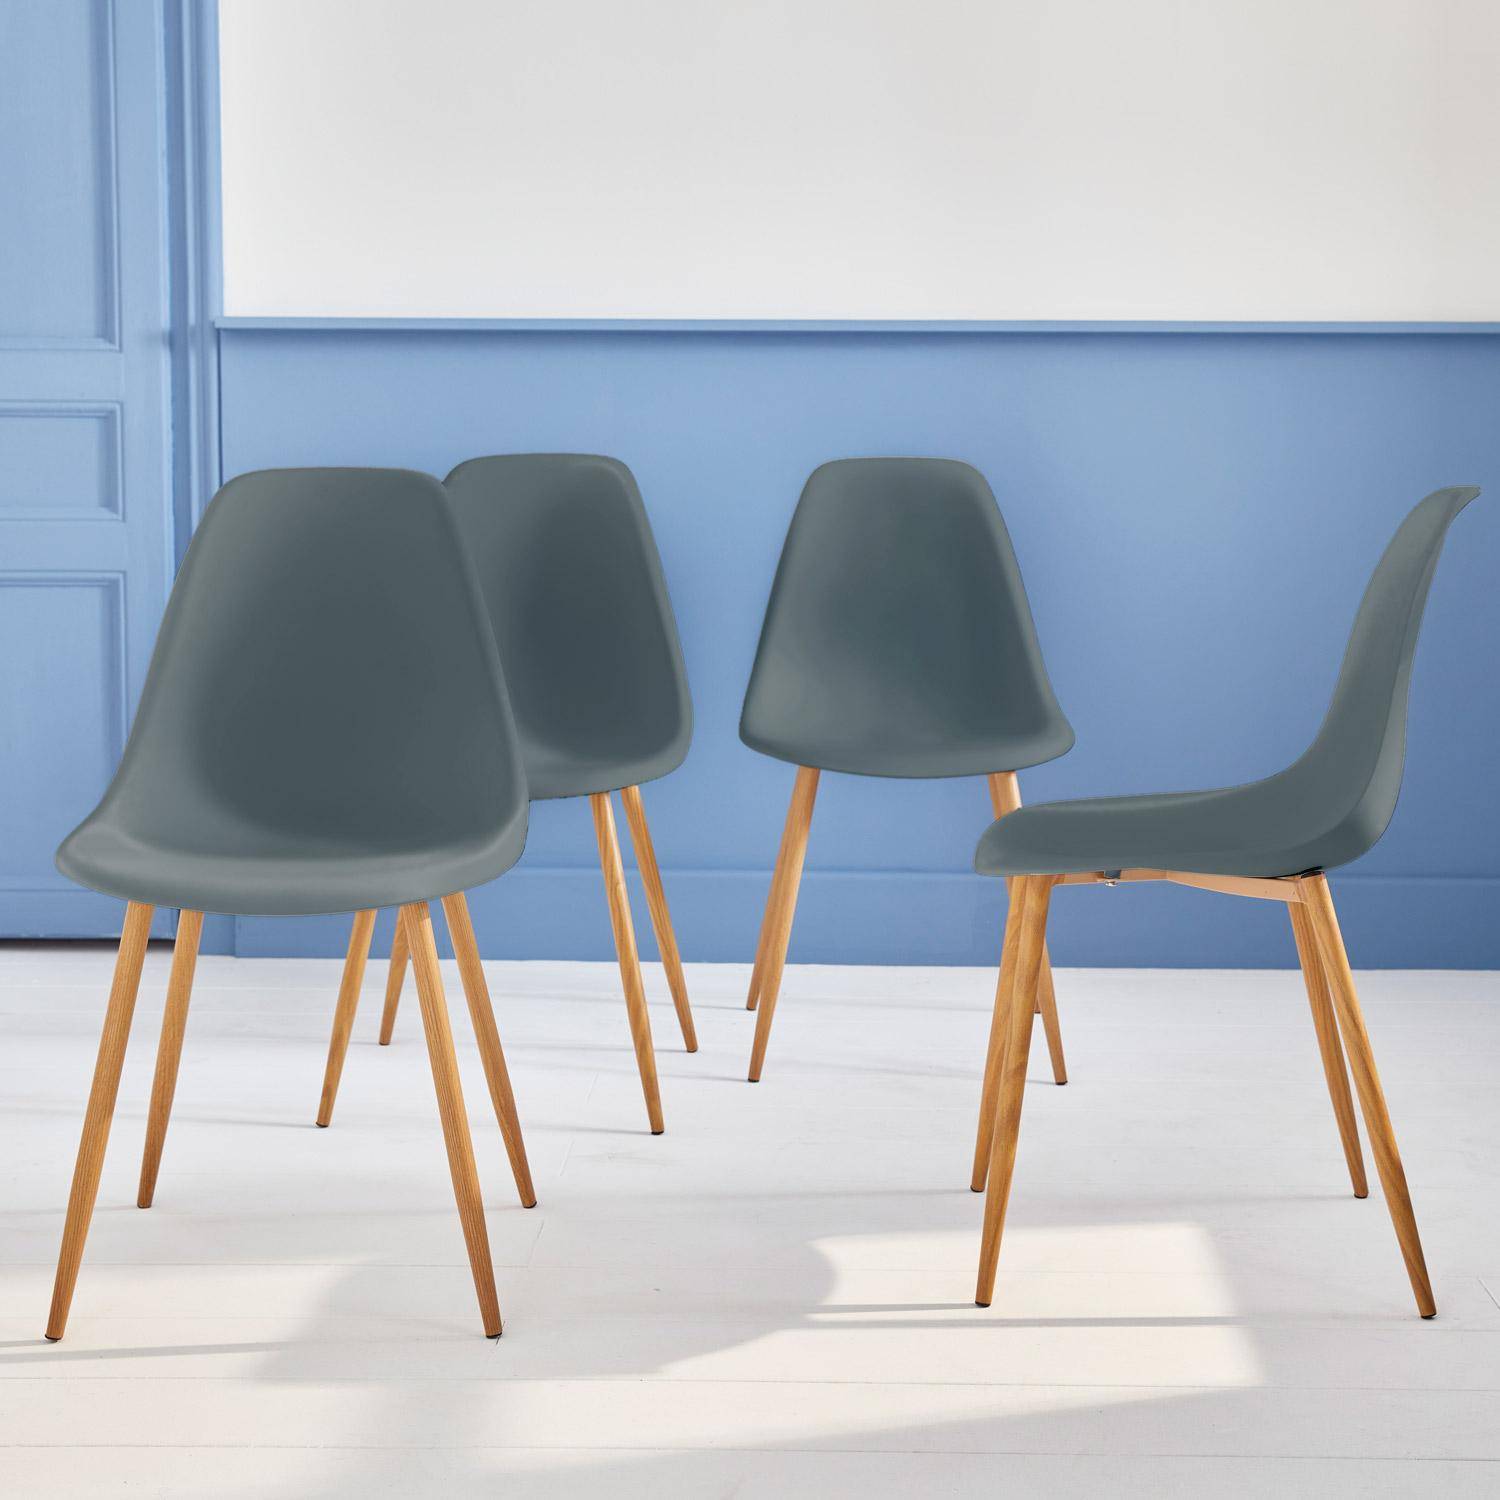 Juego de 4 sillas escandinavas - Lars - patas de metal color madera, sillas de una plaza, color gris Photo2